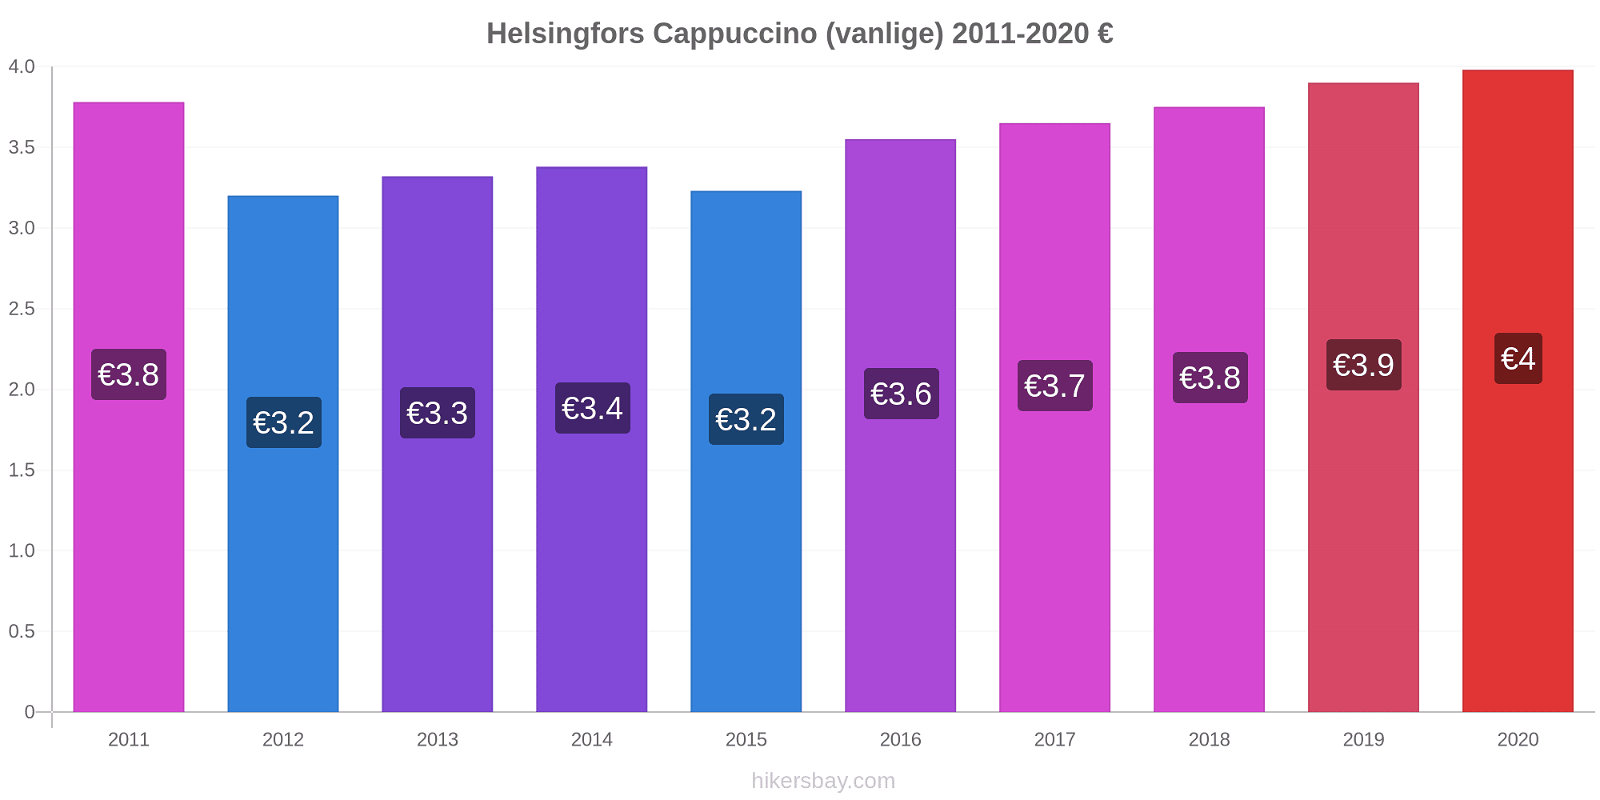 Helsingfors prisendringer Cappuccino (vanlige) hikersbay.com